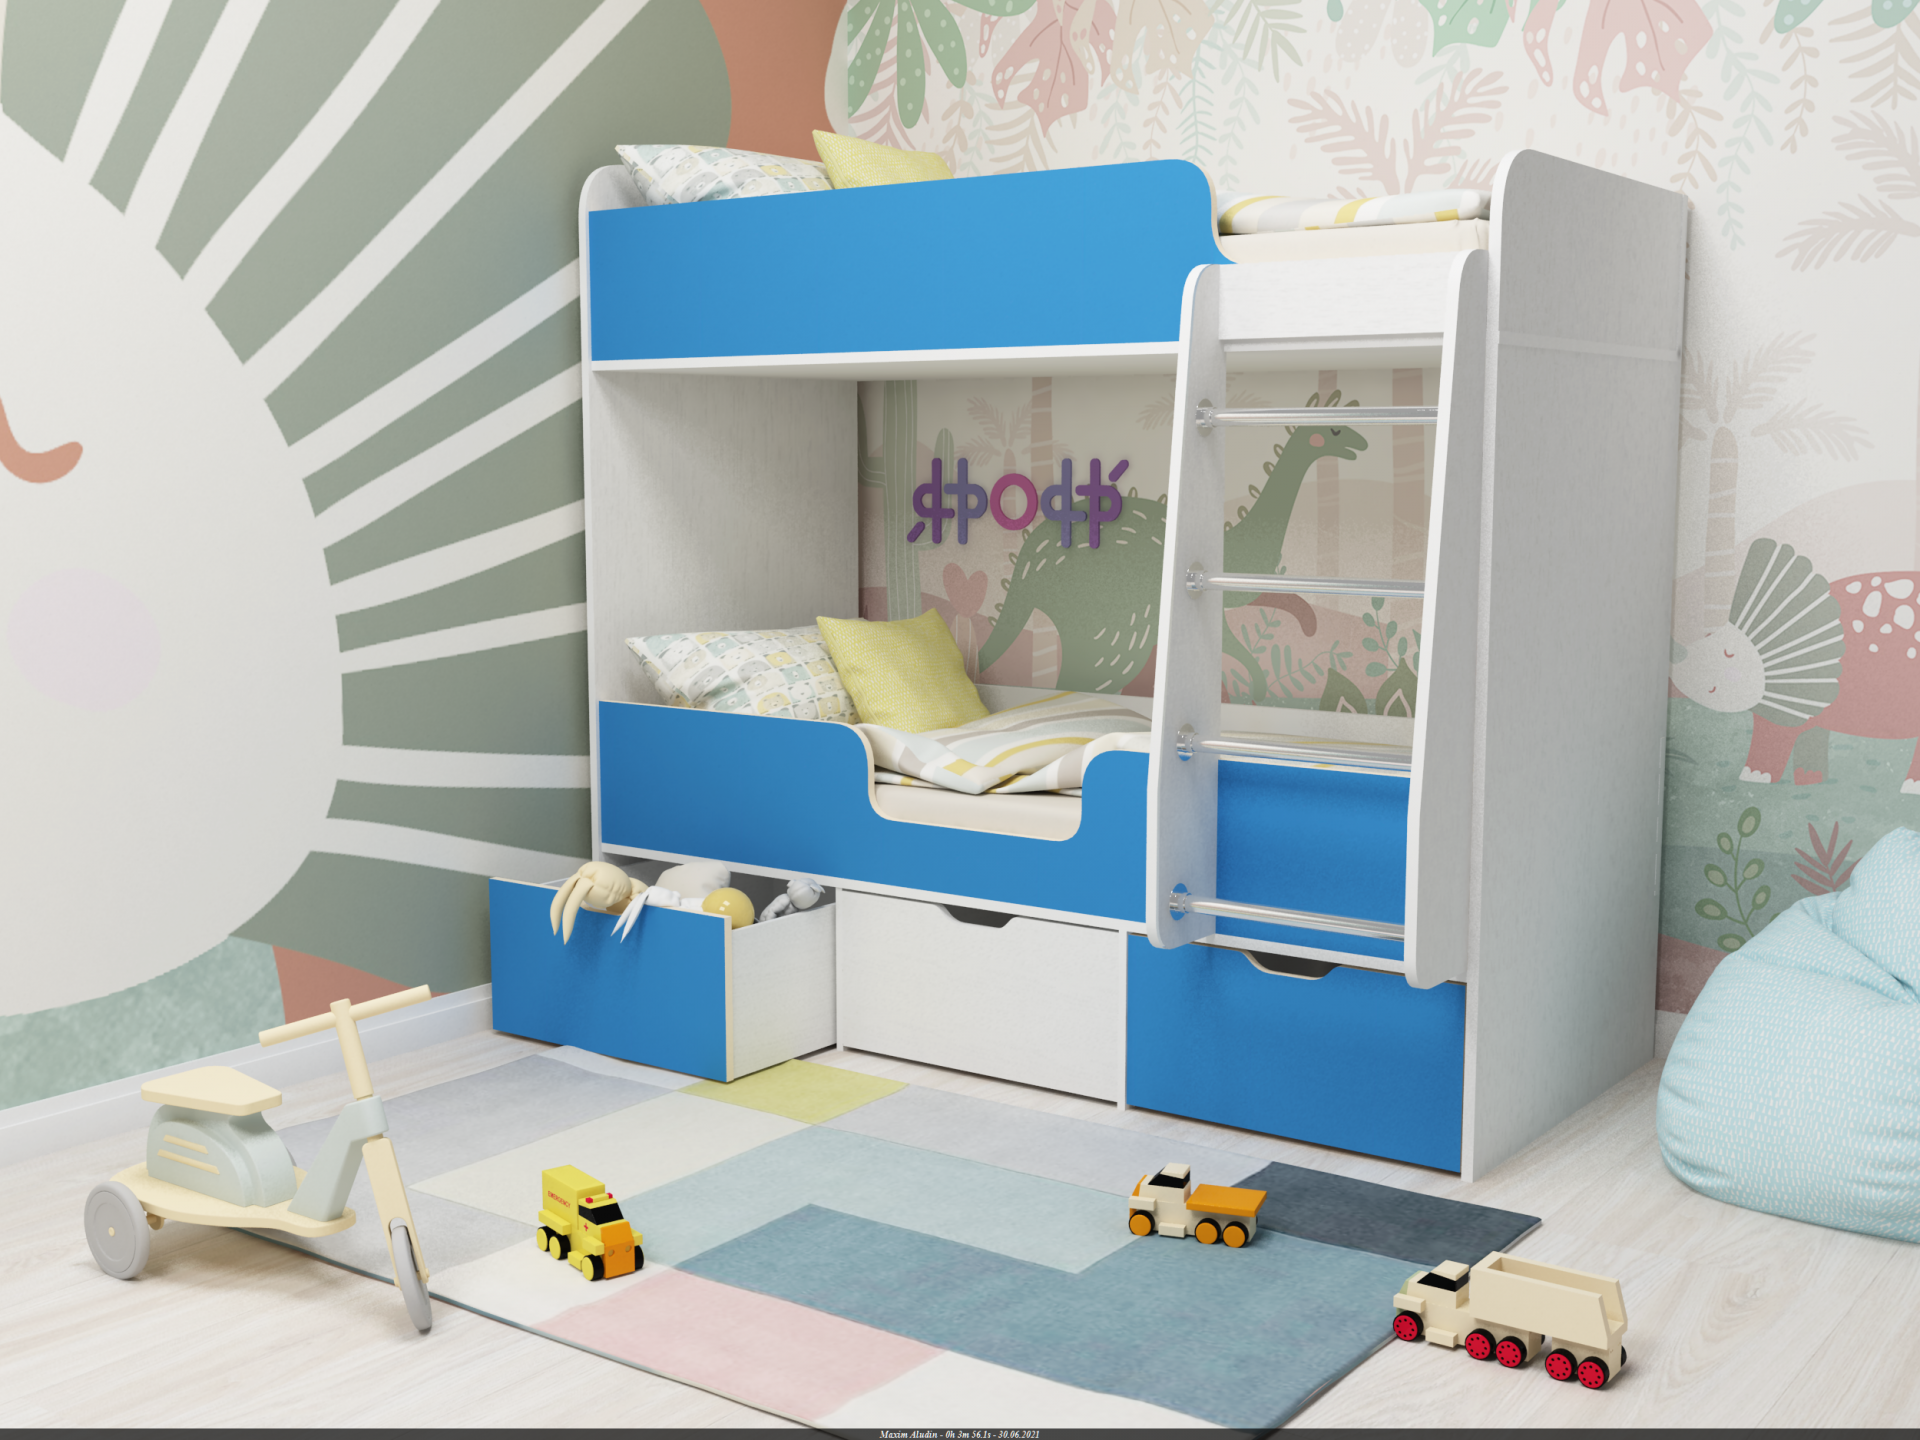 Детская комната с двухъярусной кроватью: идеи для дизайна интерьера